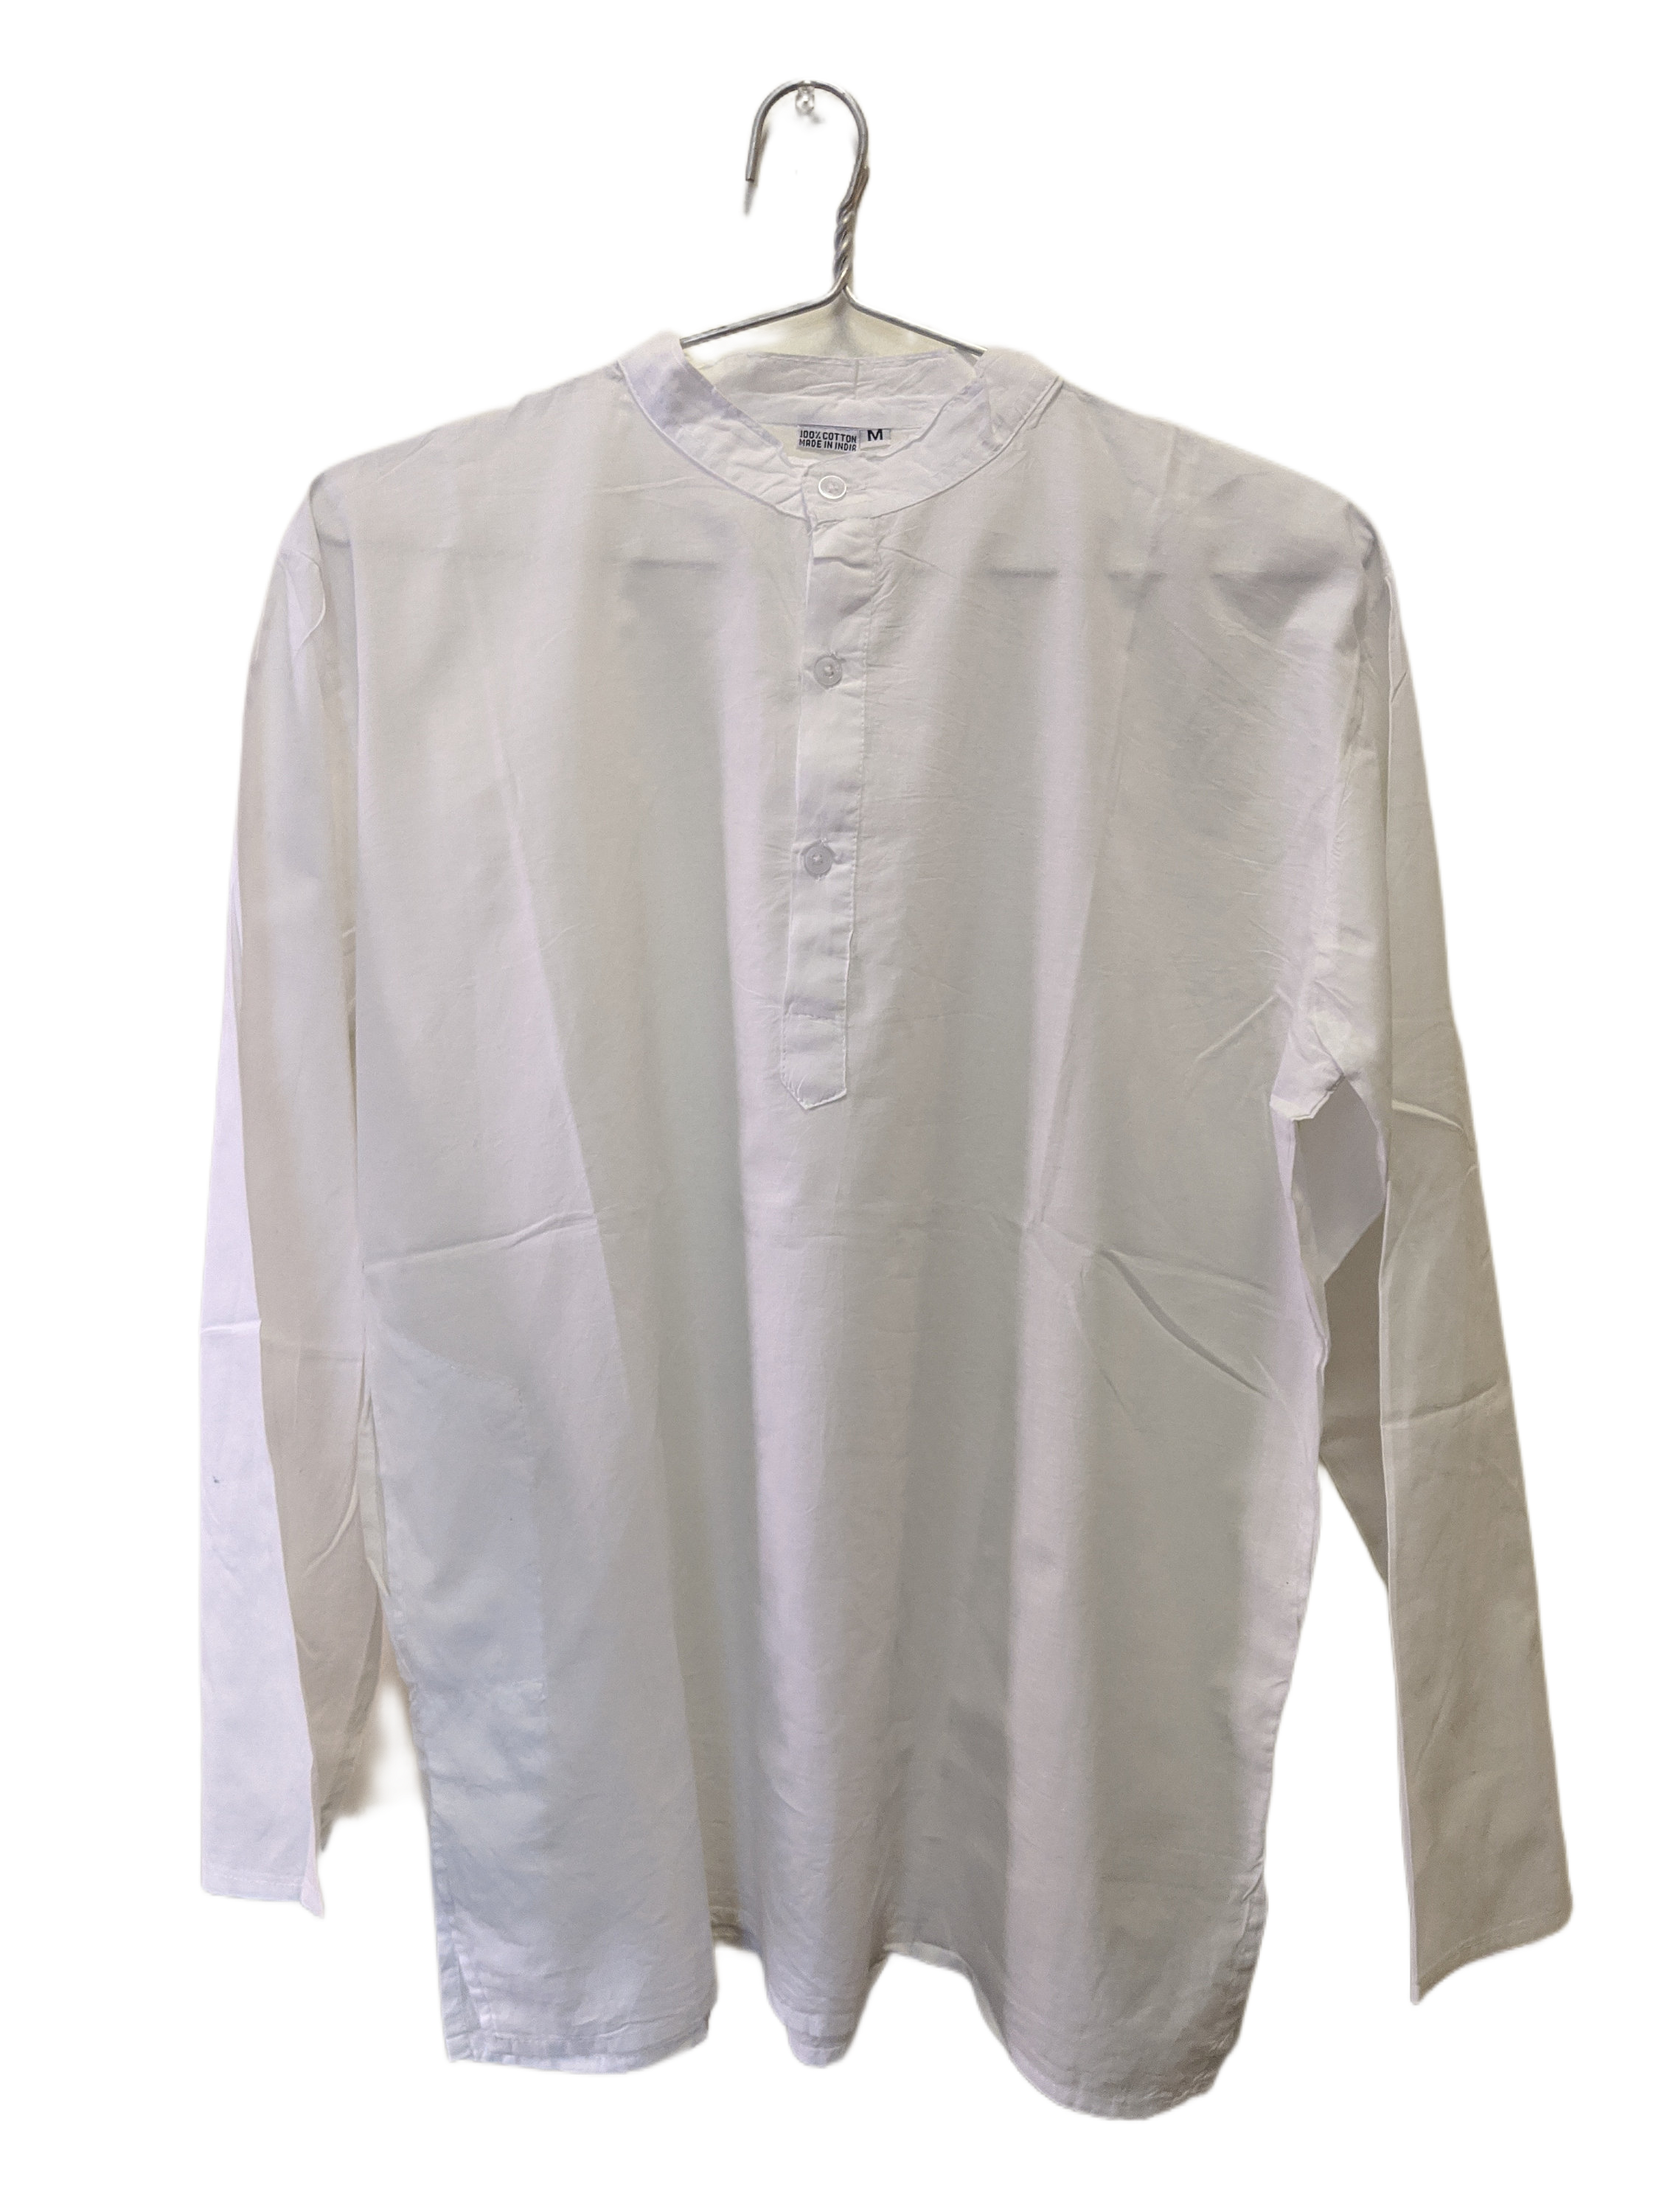 White Cotton Classic Shirt, Tunic, Kurta for Woman or Man – Tibet